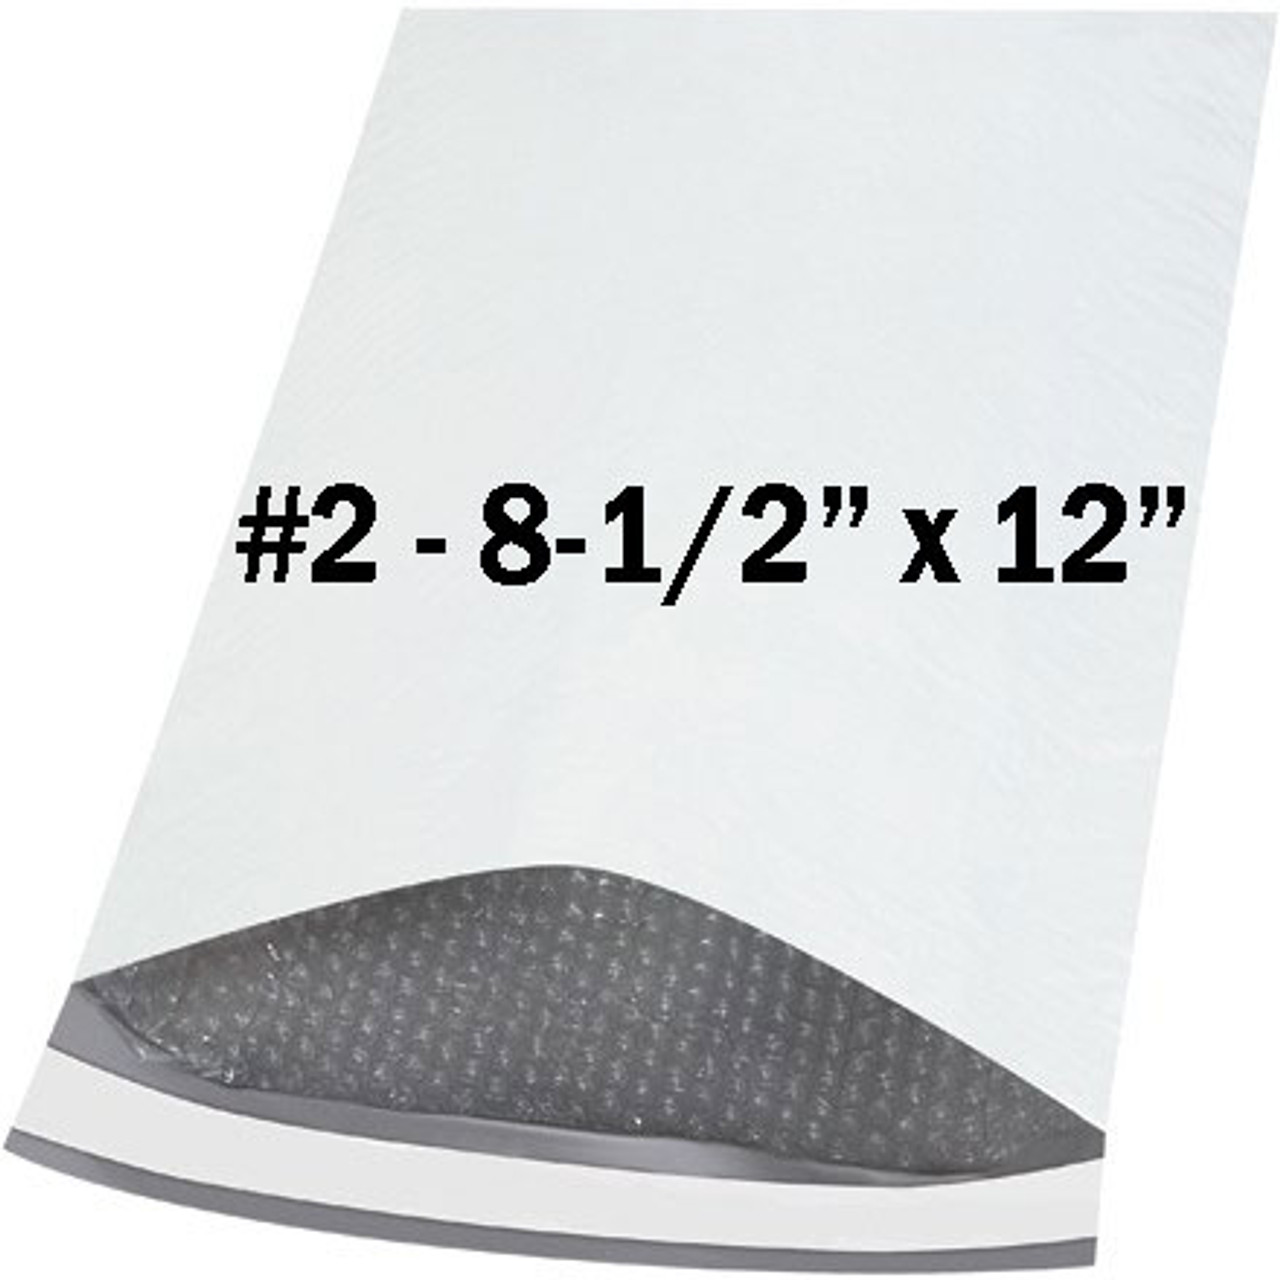 #2 - 8-1/2" x 12" white poly bubble envelope - ea.